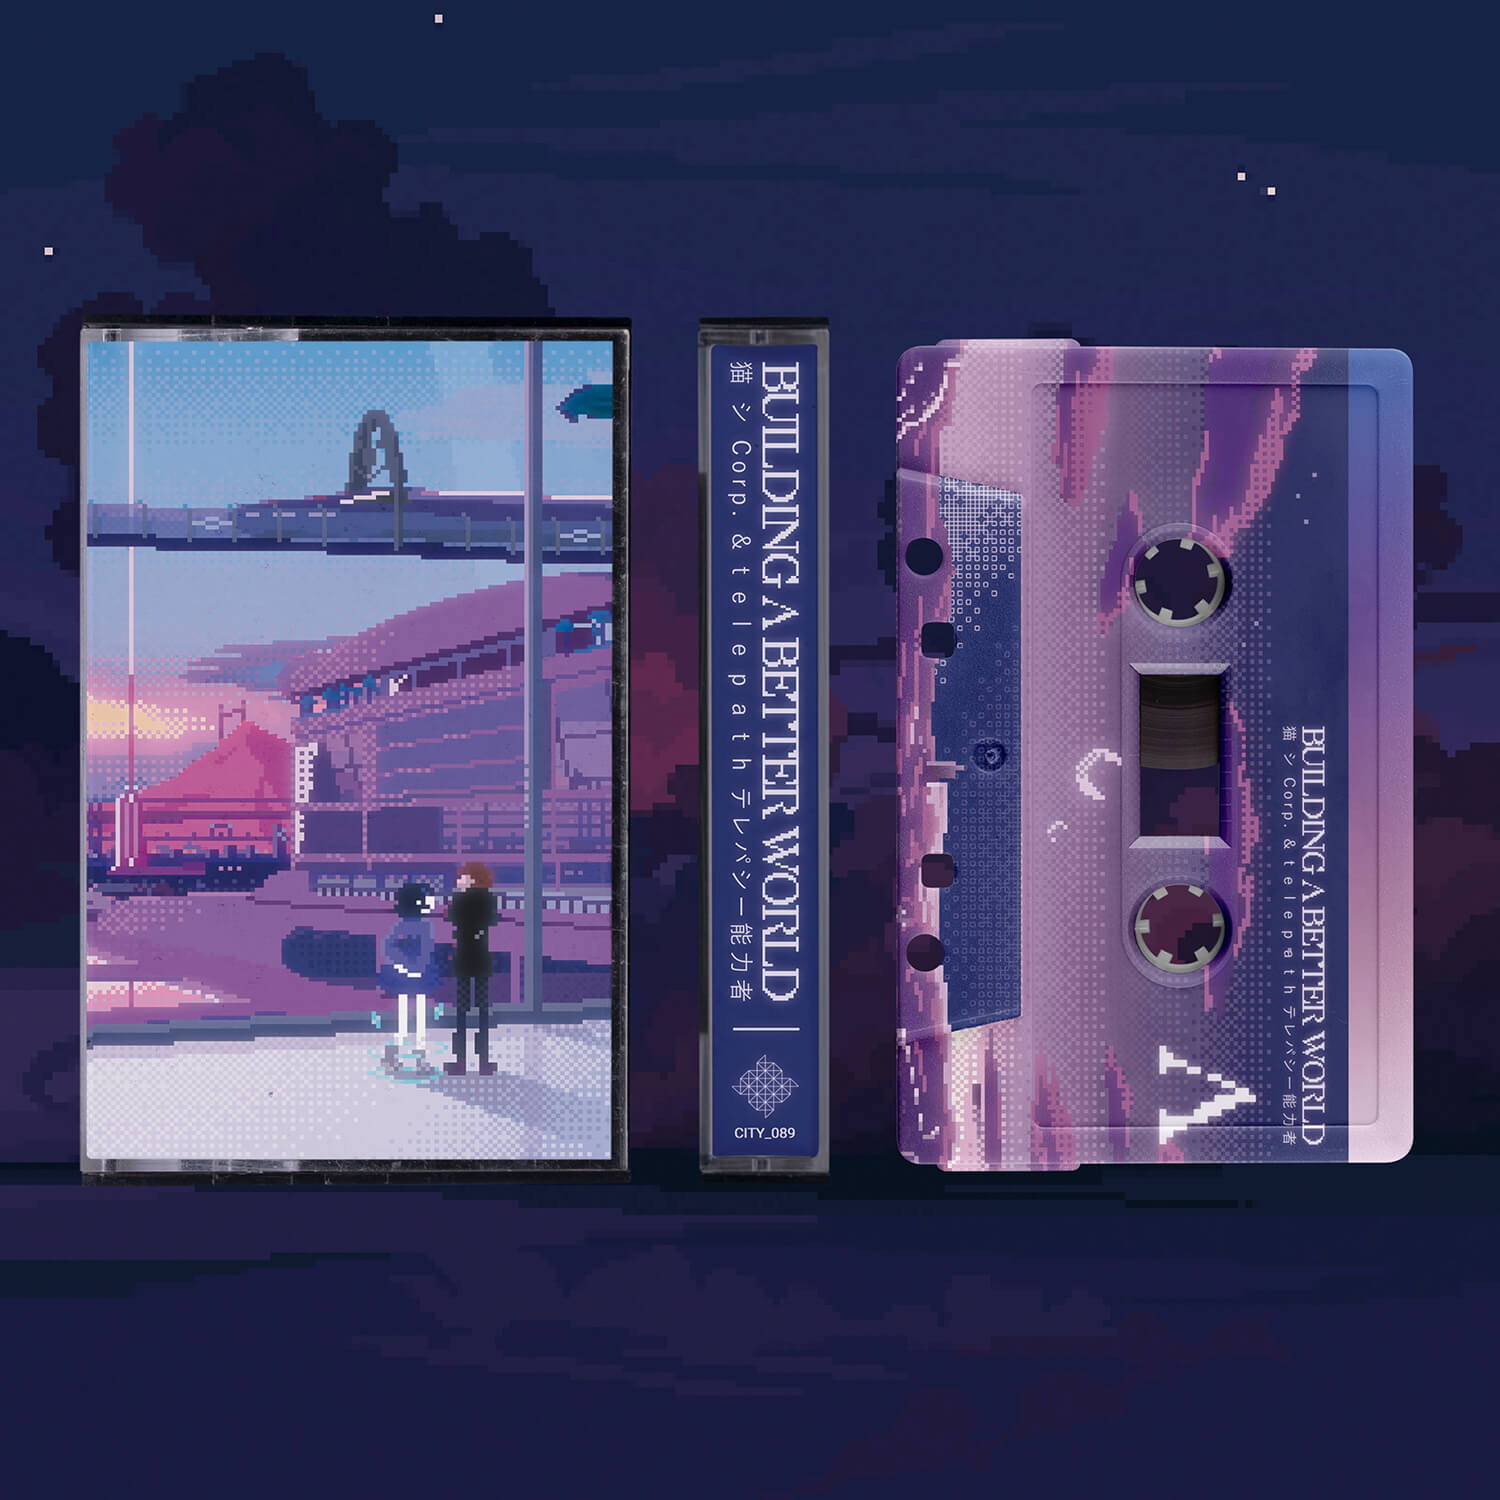 Cityman Productions vaporwave cassettes